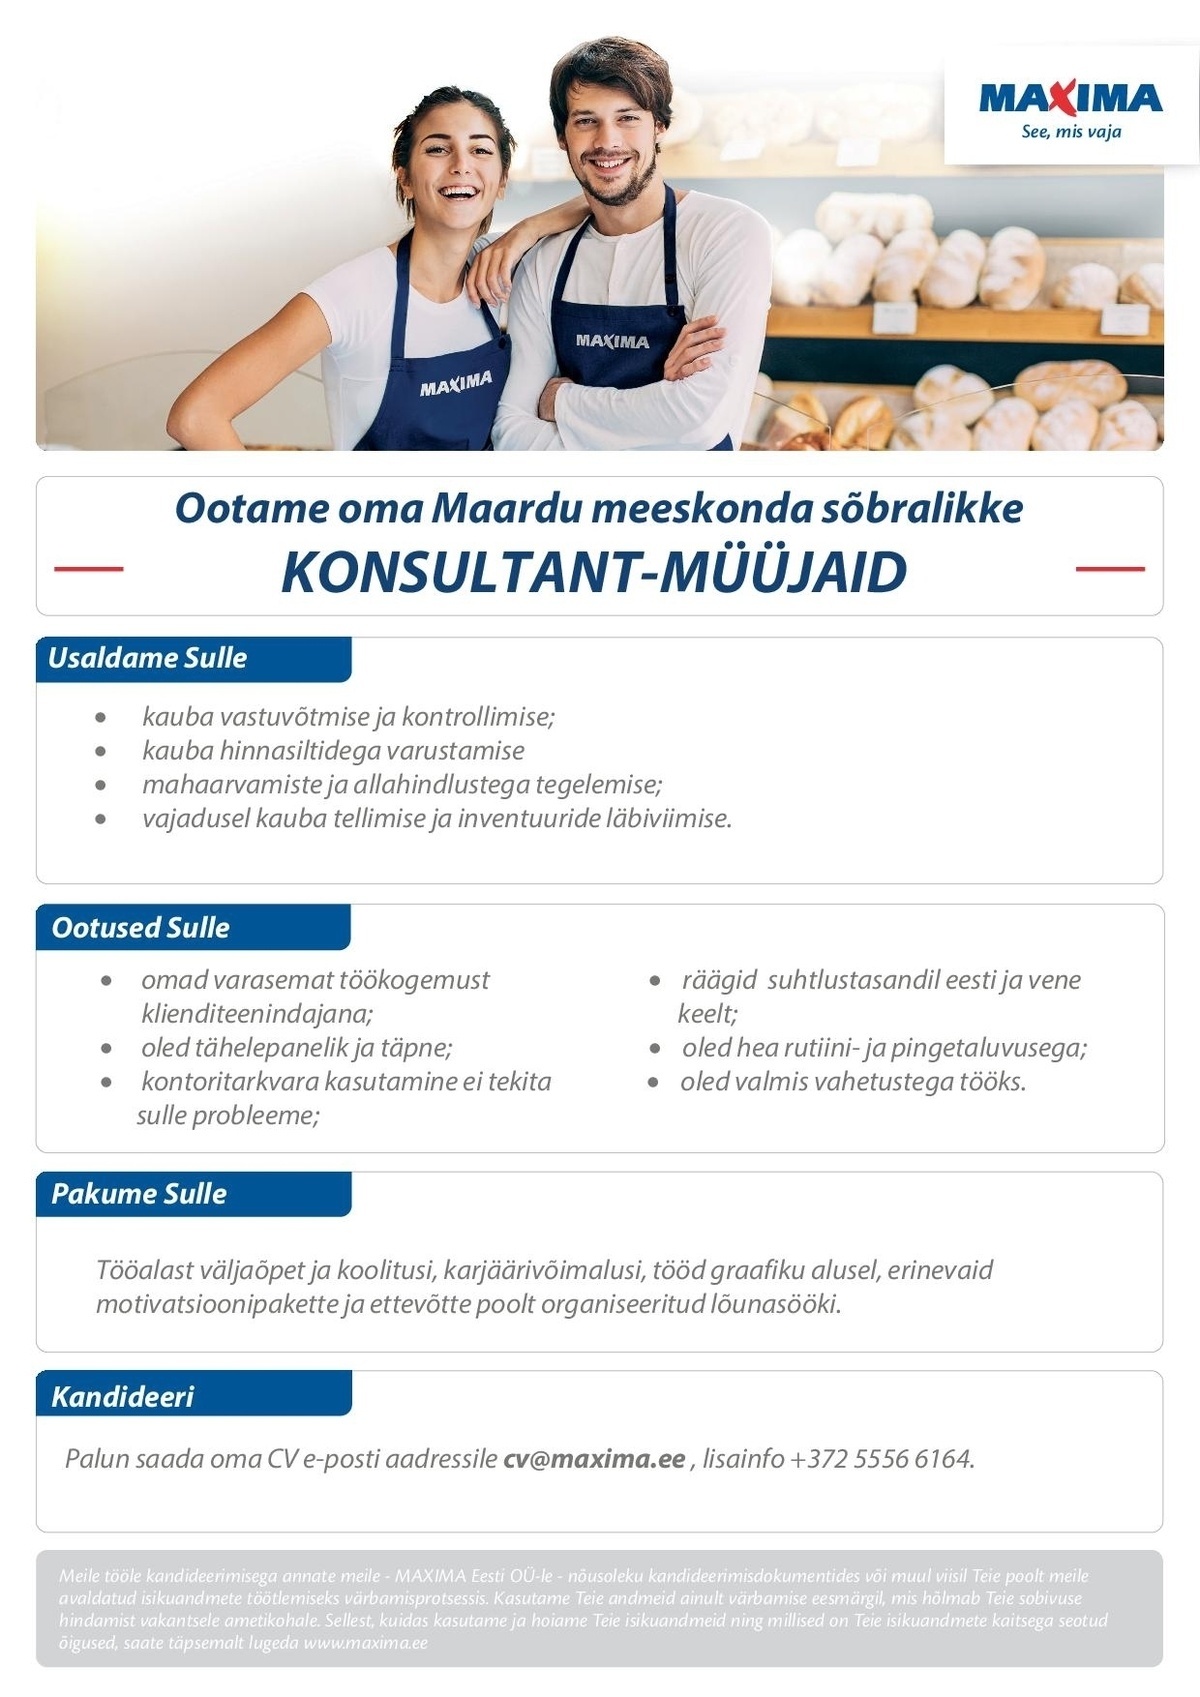 Maxima Eesti OÜ Konsultant-müüja Maardu Maximas (Keemikute 2) 